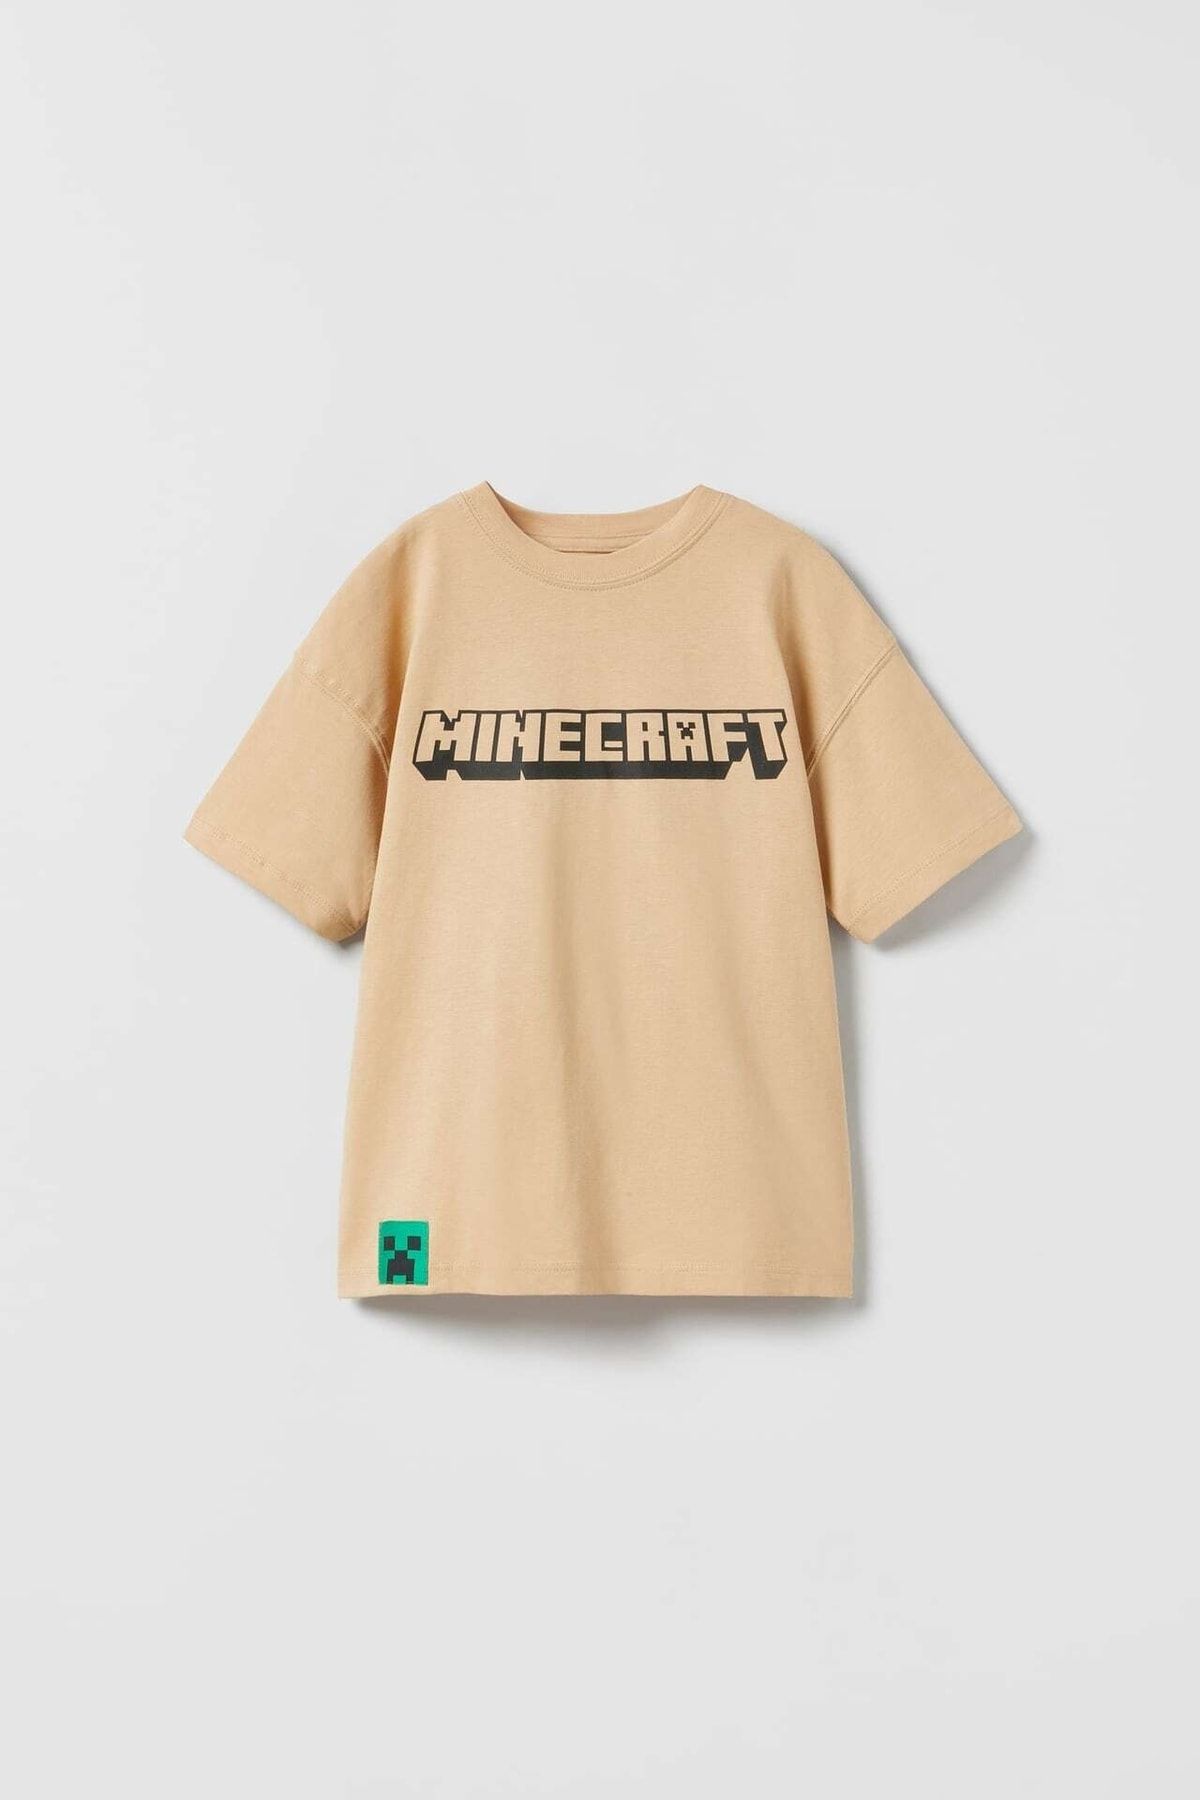 Lolliboomkids Yeni Sezon Minecraft Baskılı Unisex Tişört